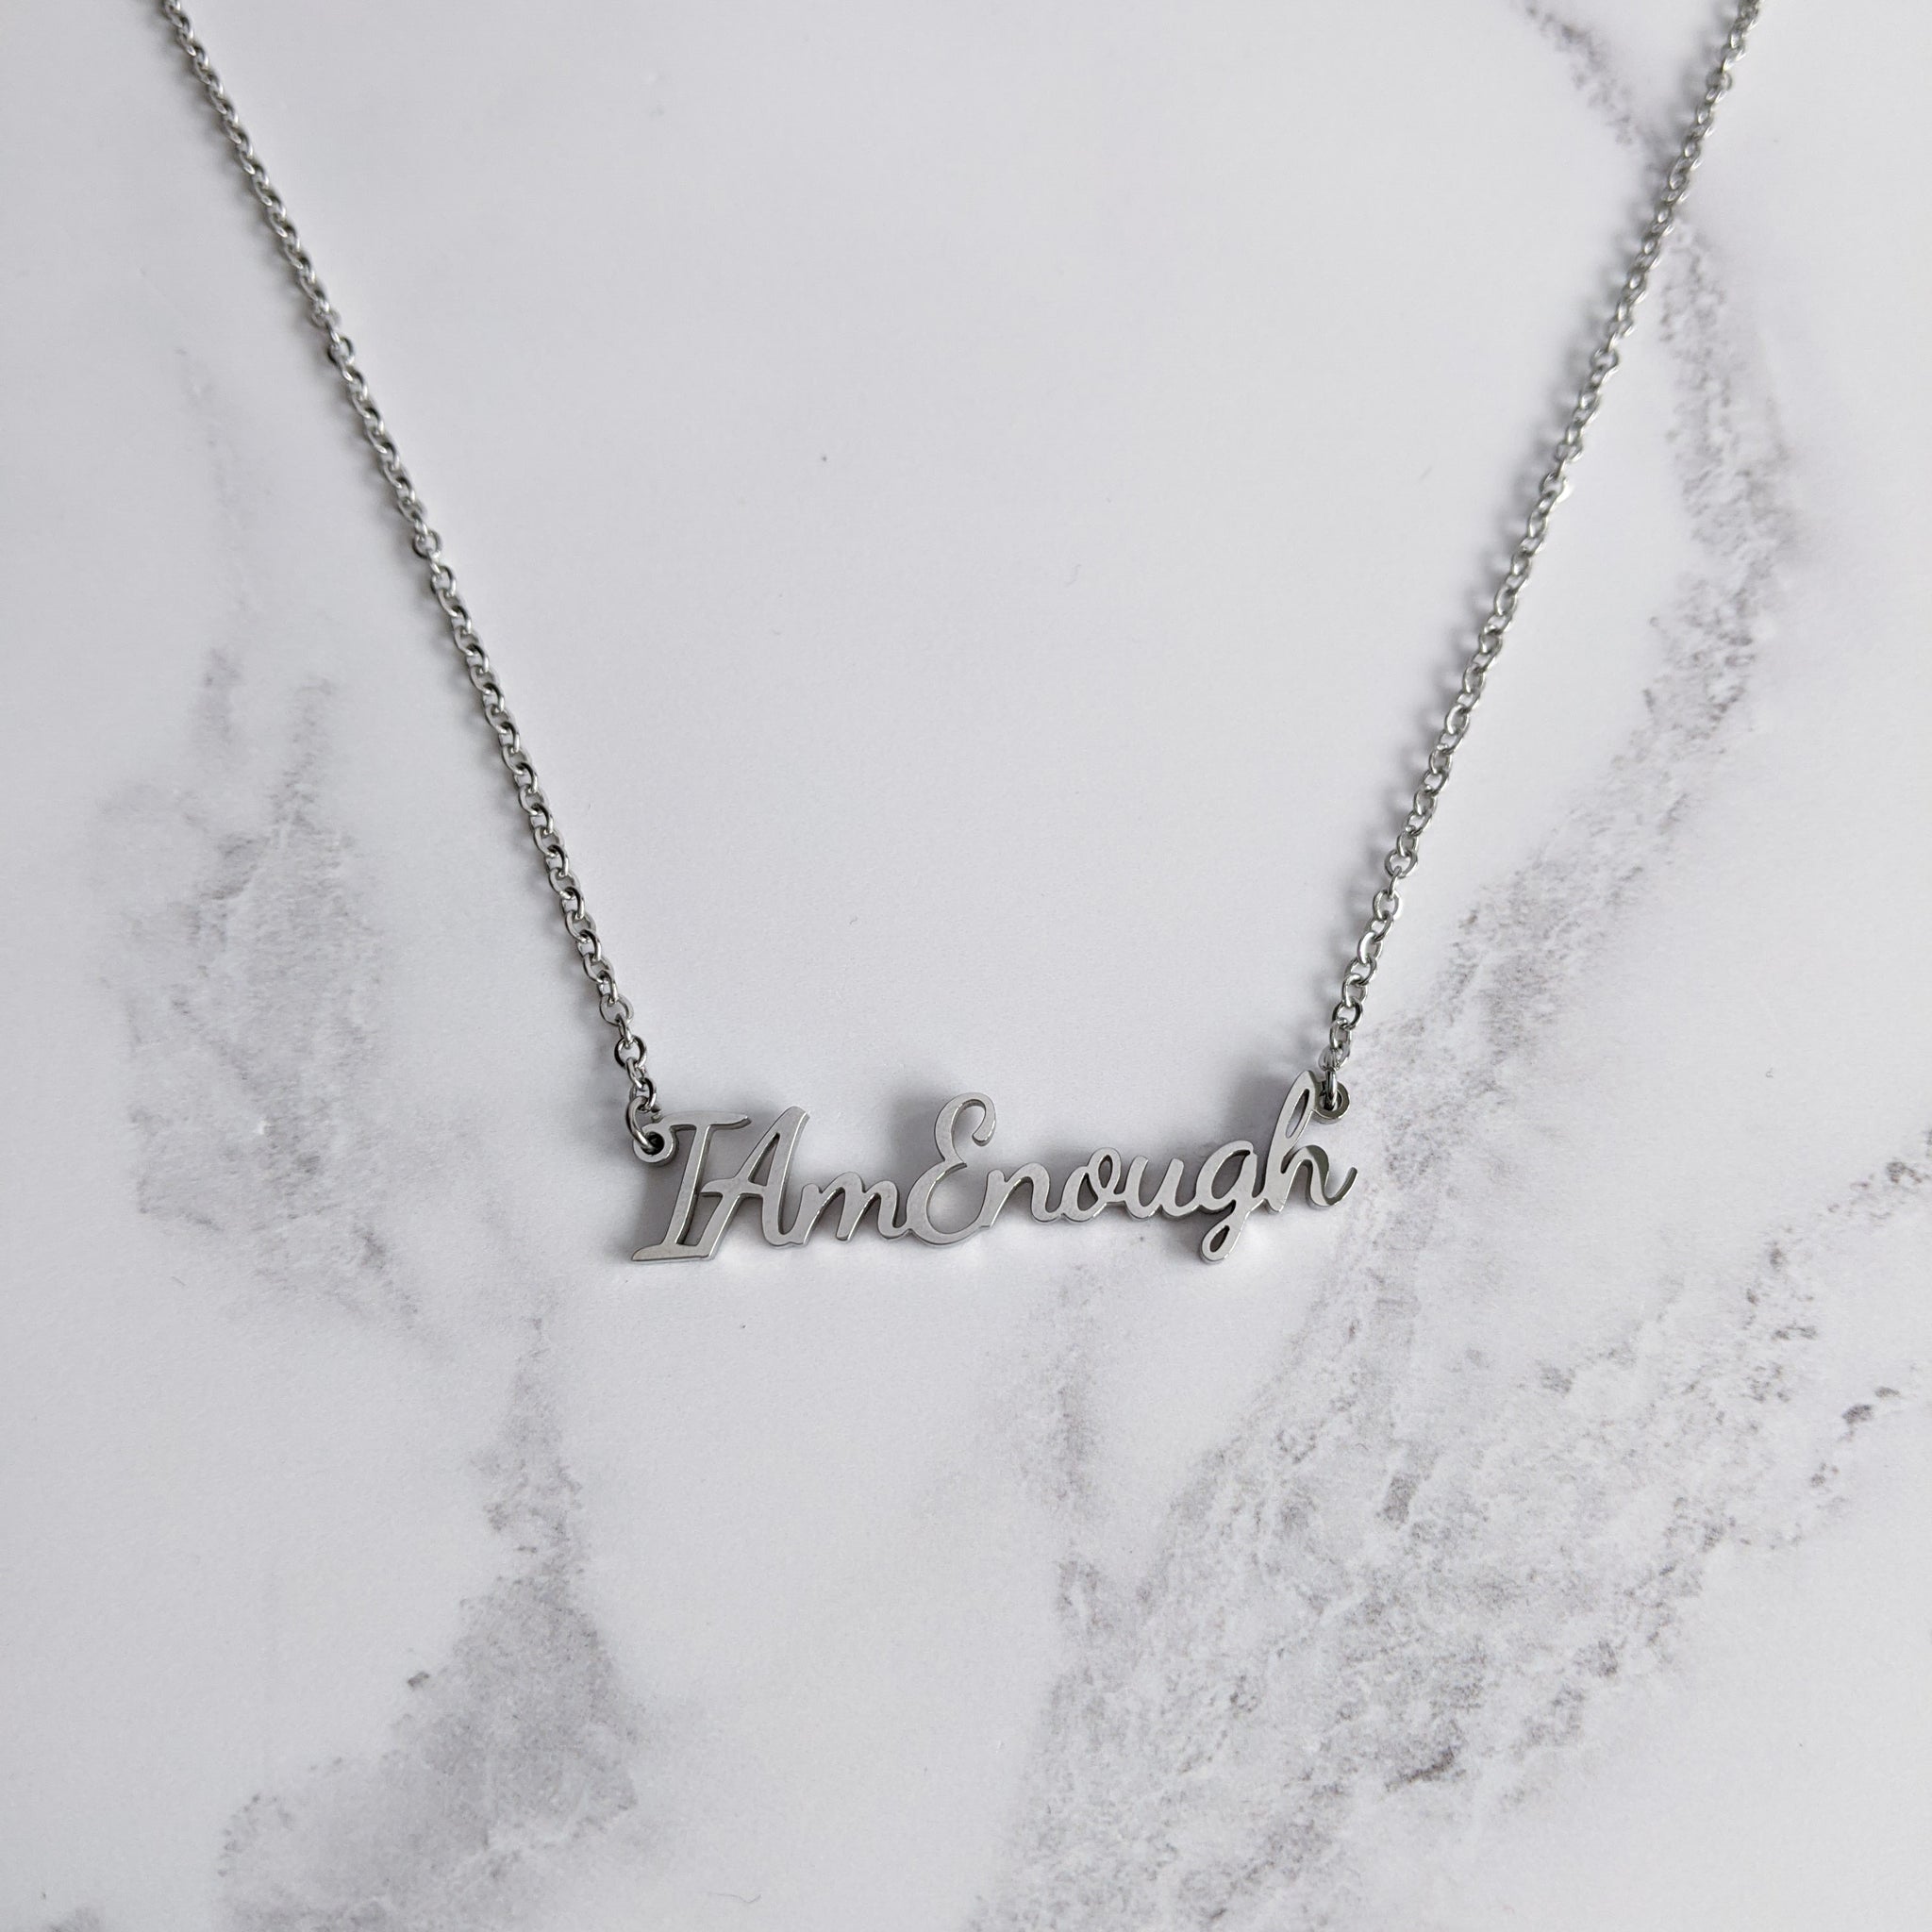 Gratitude Pendant Necklace | I am Grateful | Sterling Silver